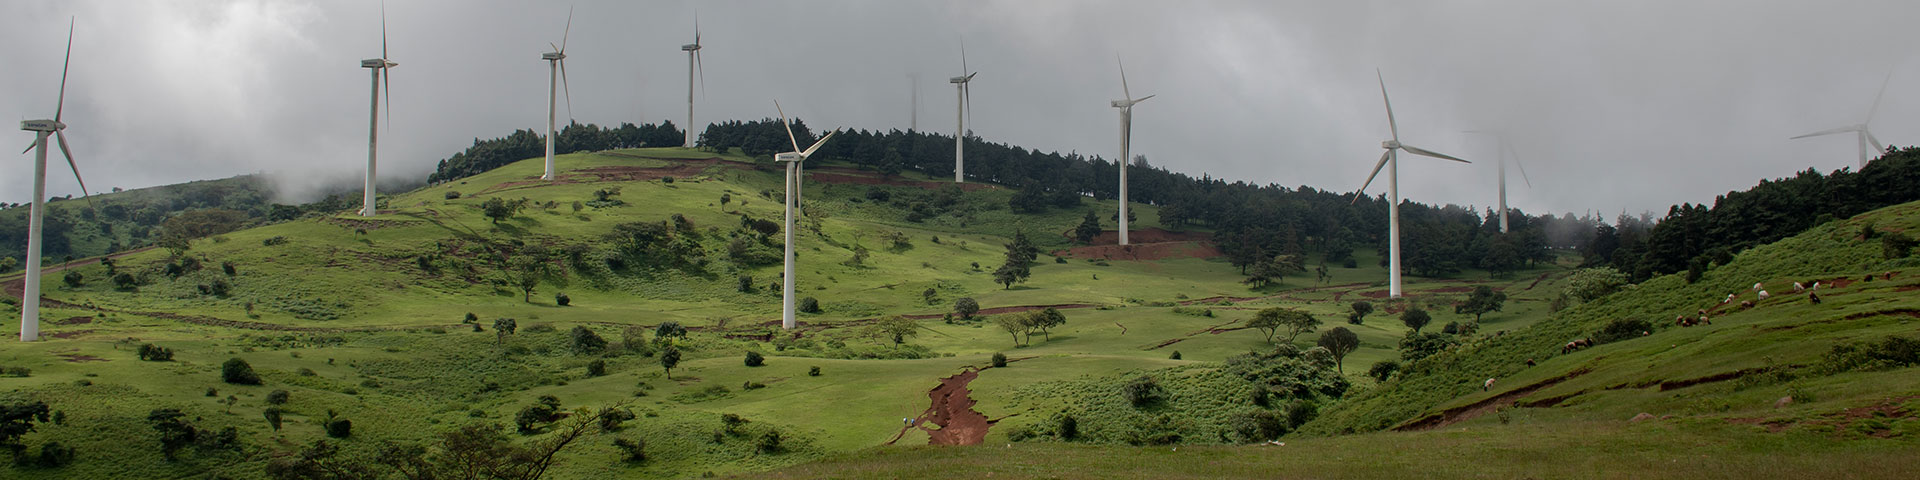 Windräder auf einem grünen Hügel